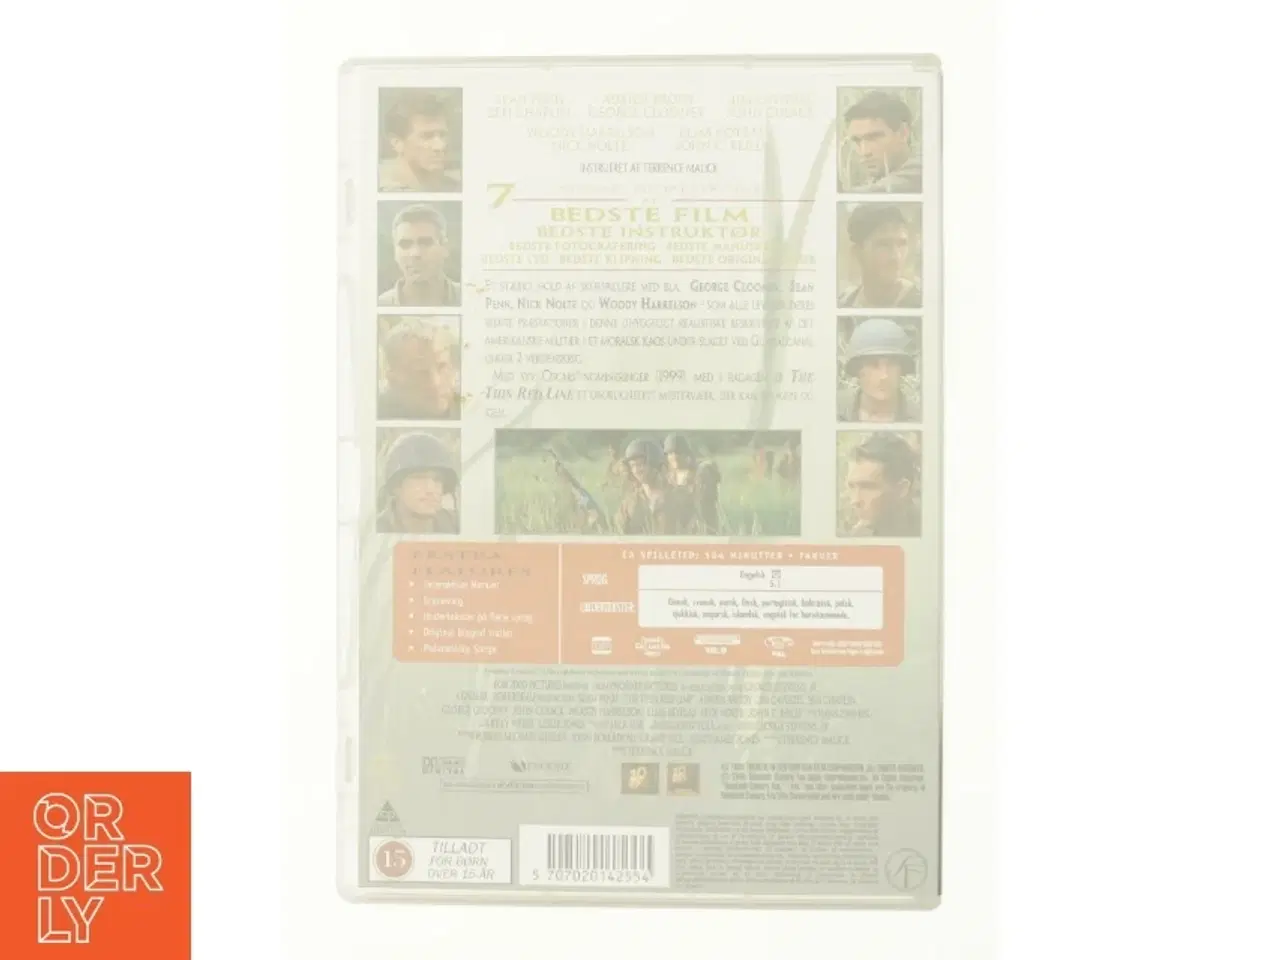 Billede 3 - Thin red line fra DVD